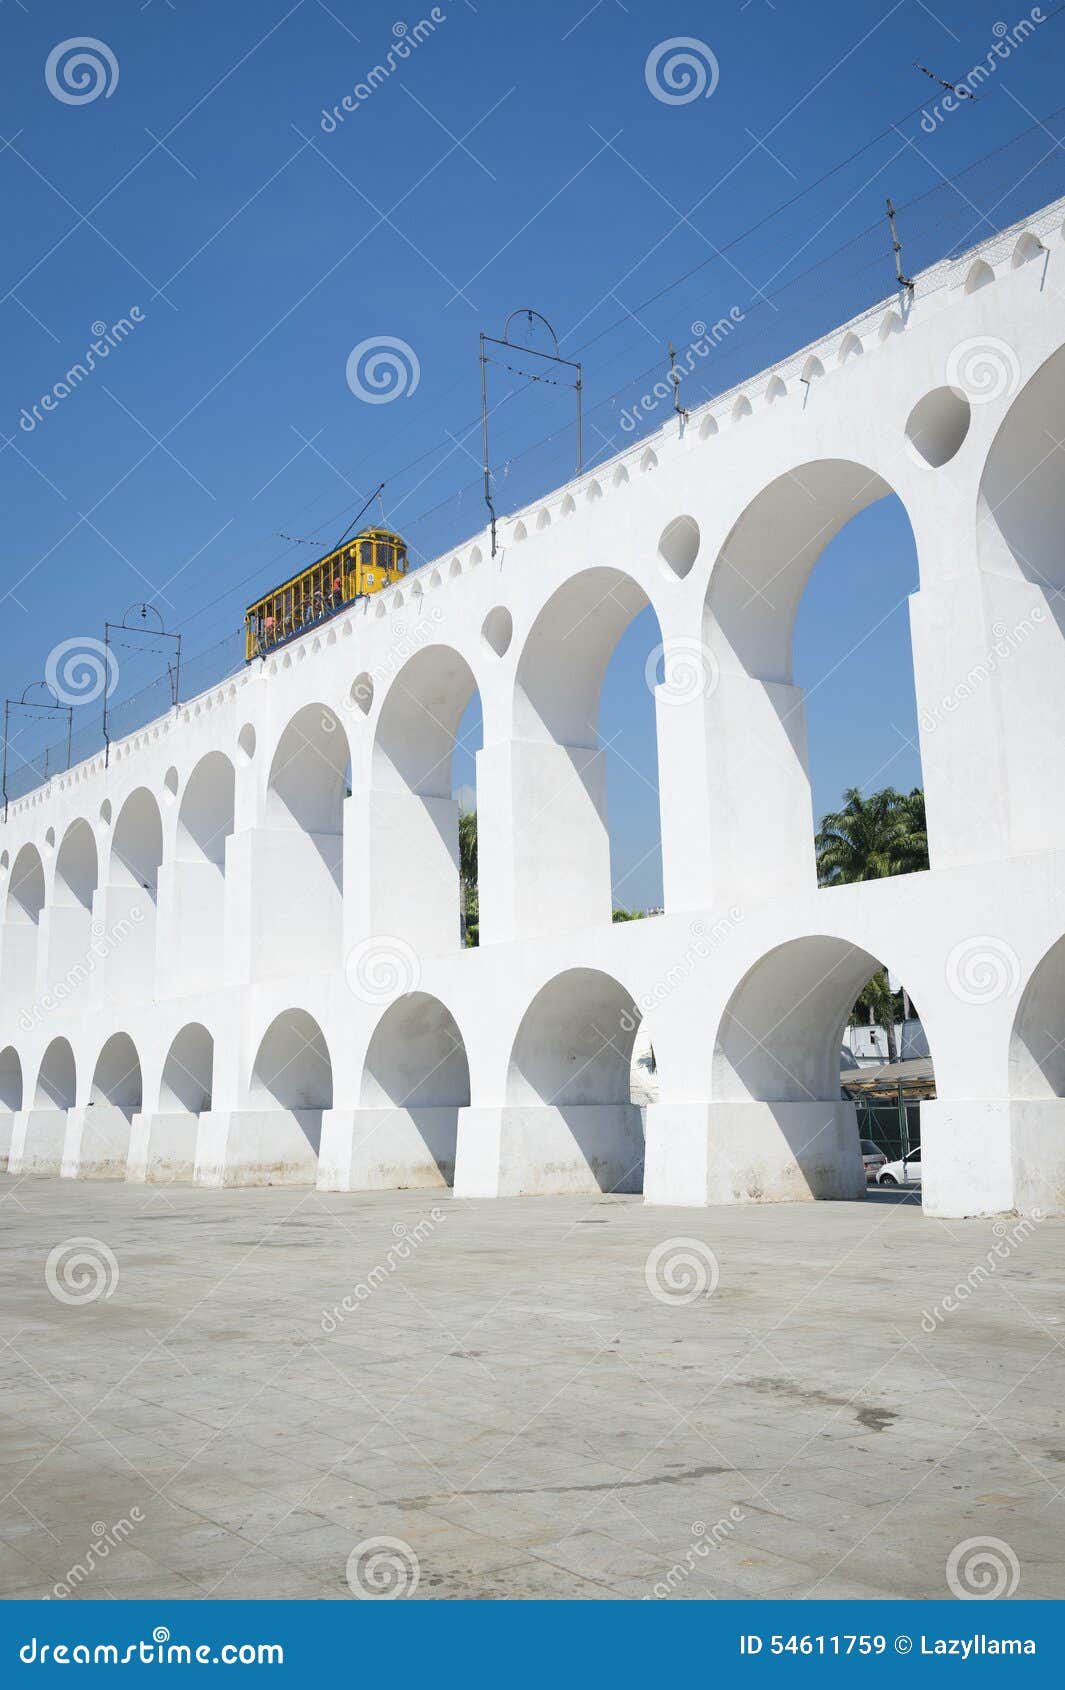 bonde tram train at arcos da lapa arches rio de janeiro brazil